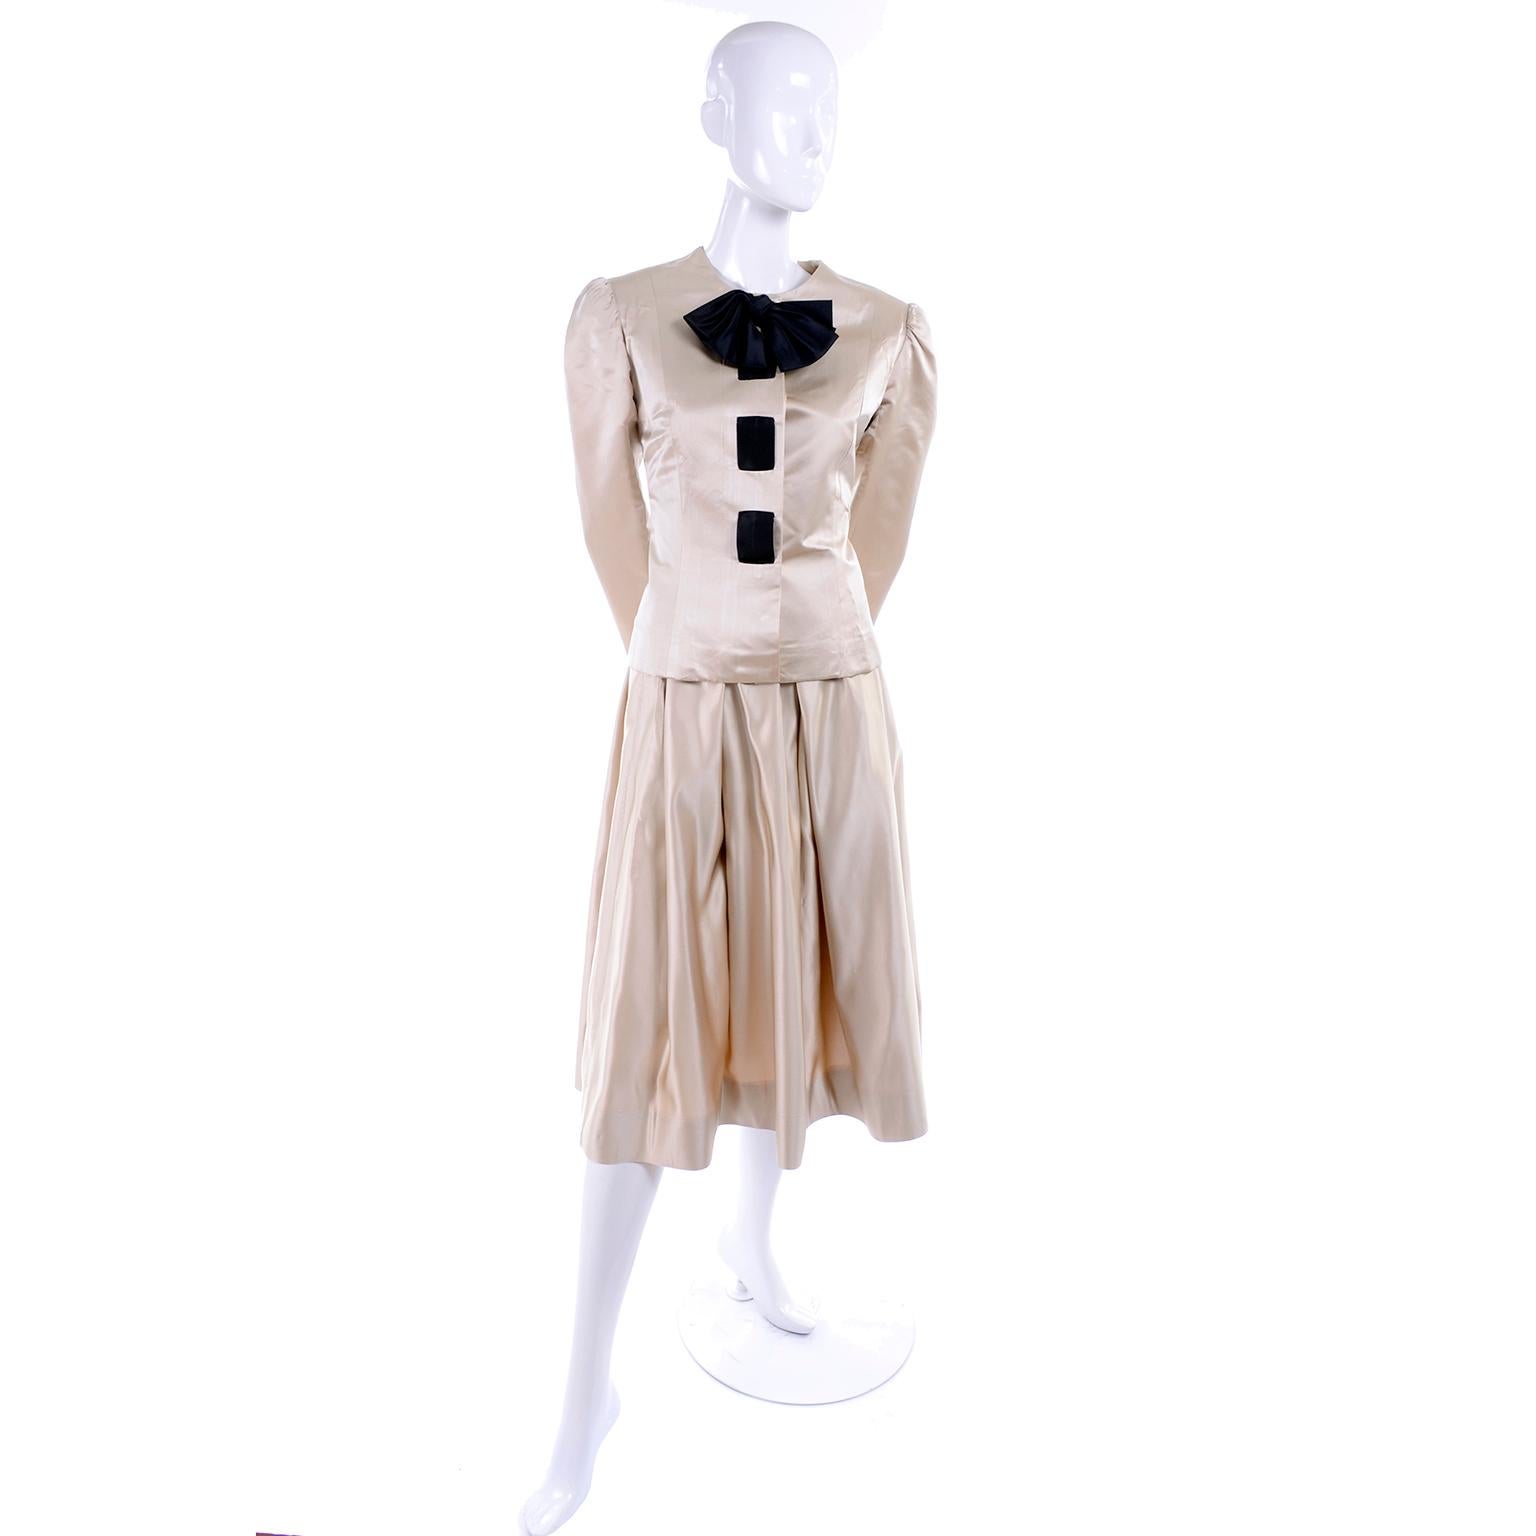 Dieses schöne 2-teilige Kleid oder Anzug ist von Albert Nipon und wir finden es fabelhaft! Wir haben eine ganz neue Wertschätzung für Albert Nipon entwickelt und sind auf der Suche nach seinen früheren Werken! Dieses wunderschöne Ensemble ist aus